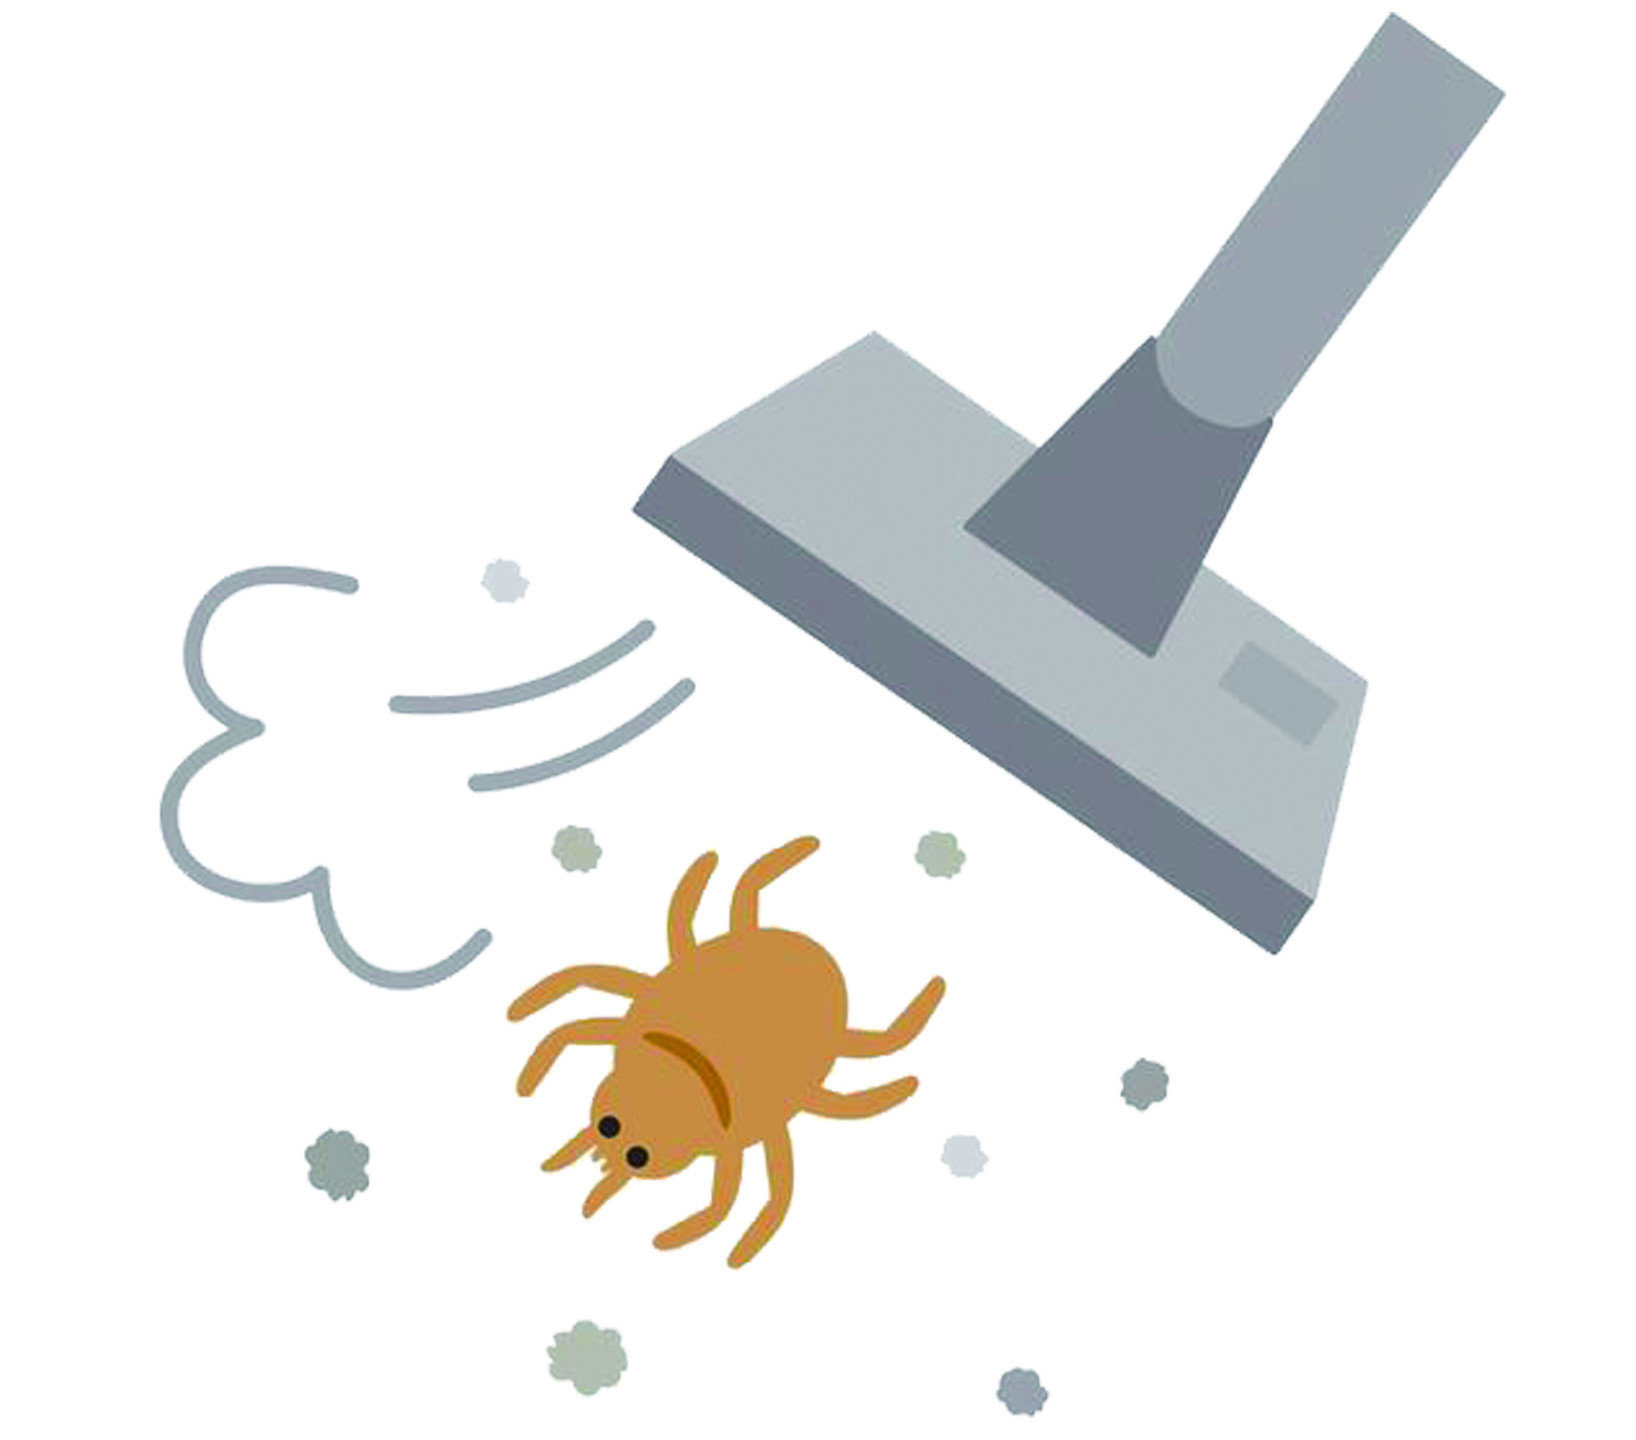 定期清掃有效減少螨類孳生，面對大部分居家害蟲最好的方式，就是降低濕度、保持環境整潔，蟎類當然也不例外。以下幾點有效減少蟎類的重點，只要穩定做到，基本上可以不用太擔心。